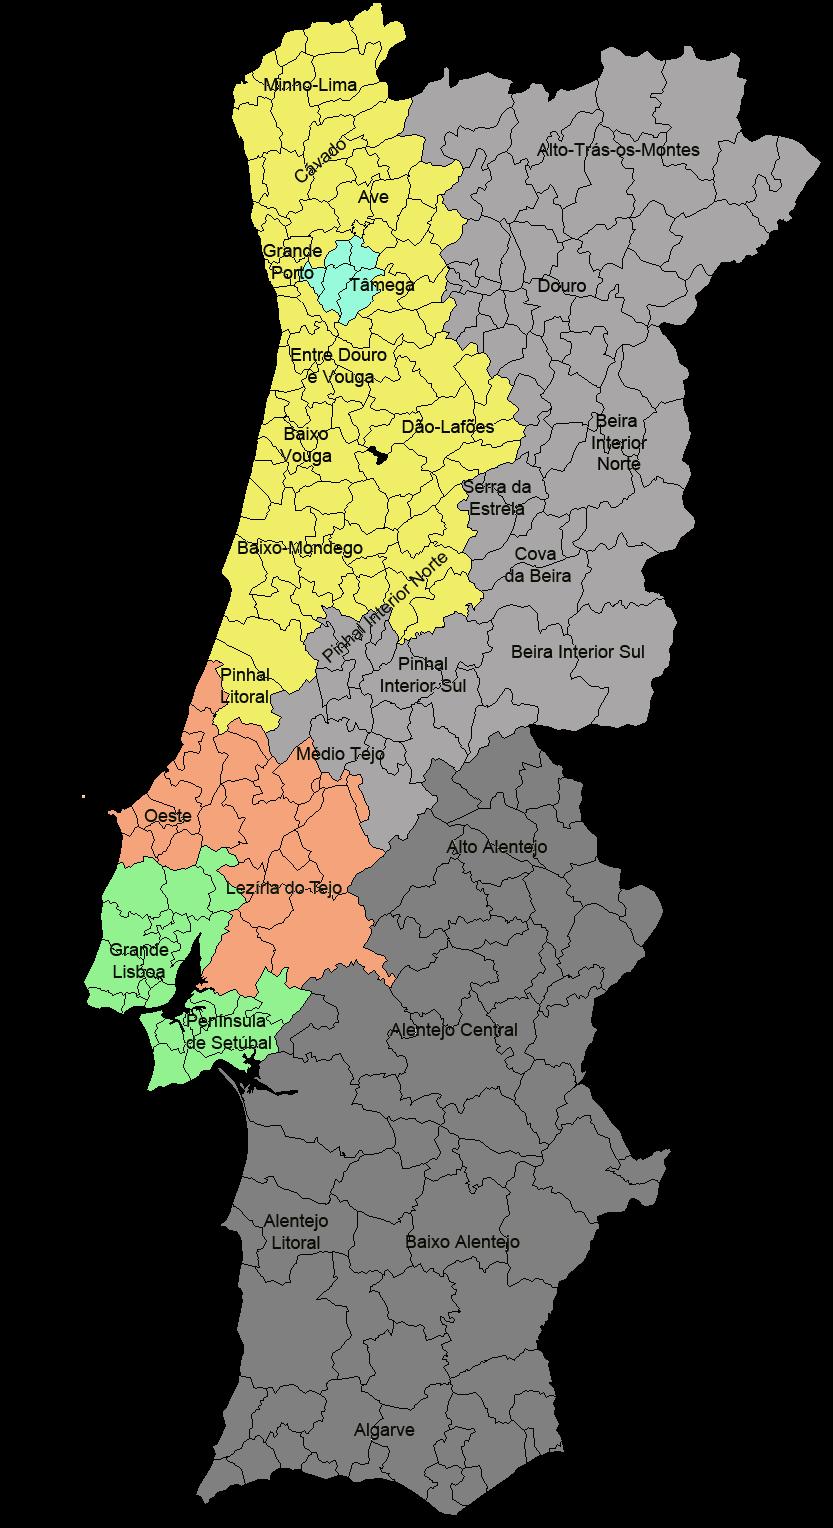 Mapa de Zonas de Entregas Armazém Lisboa orto Zona 1 Zona 2 Zona 3 Zona 4 Zona 5 Zona 6 Zona 7 Zona 8 ZONA 1 - Valongo, aredes, aços de Ferreira, Lousada e enafiel ZONA 2 - outros concelhos do Tâmega